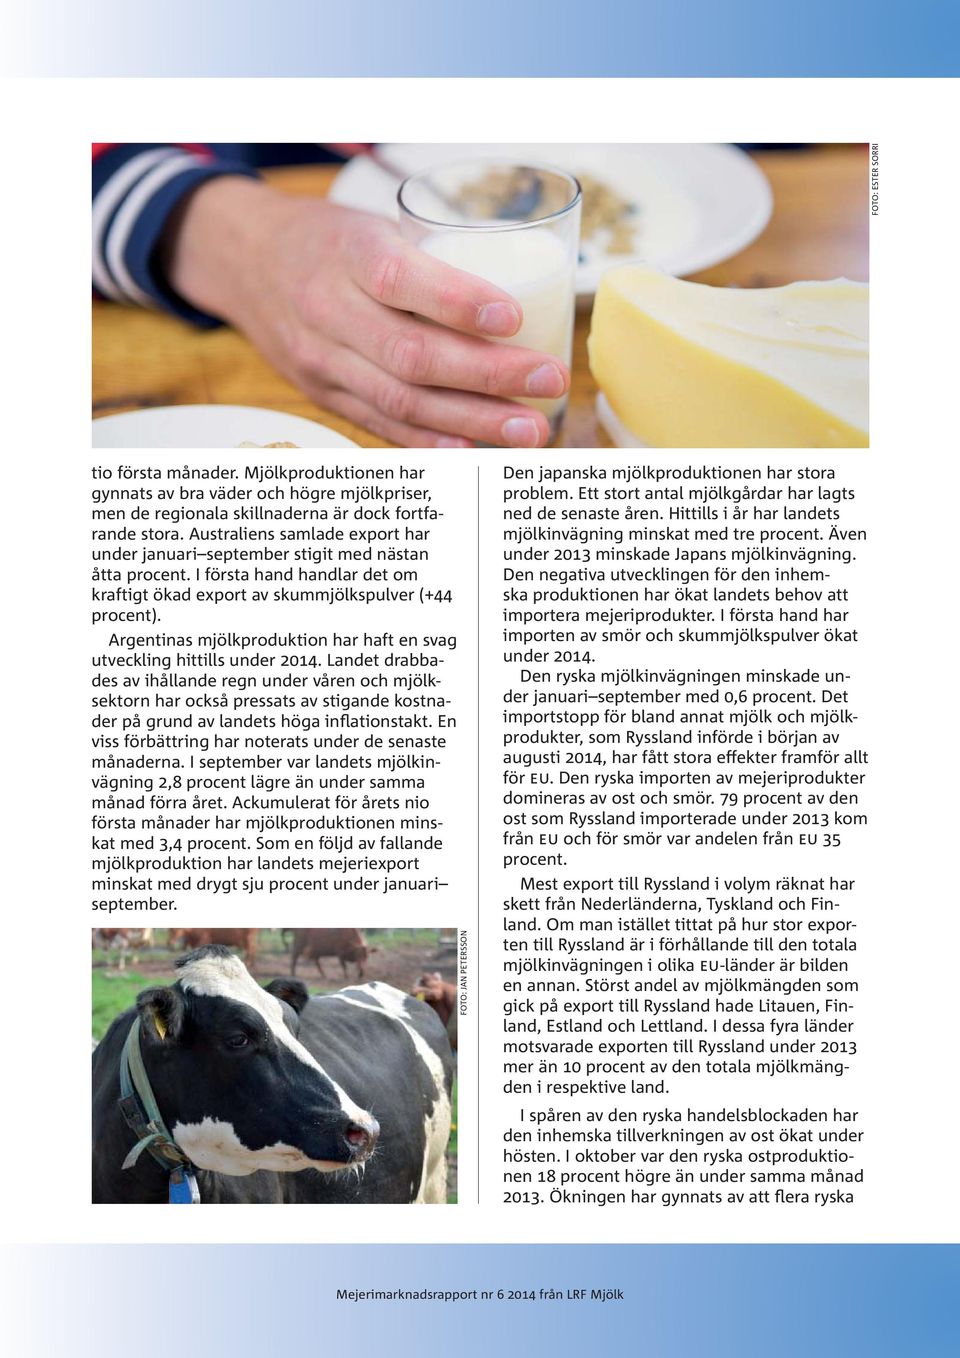 Argentinas mjölkproduktion har haft en svag utveckling hittills under 2014.